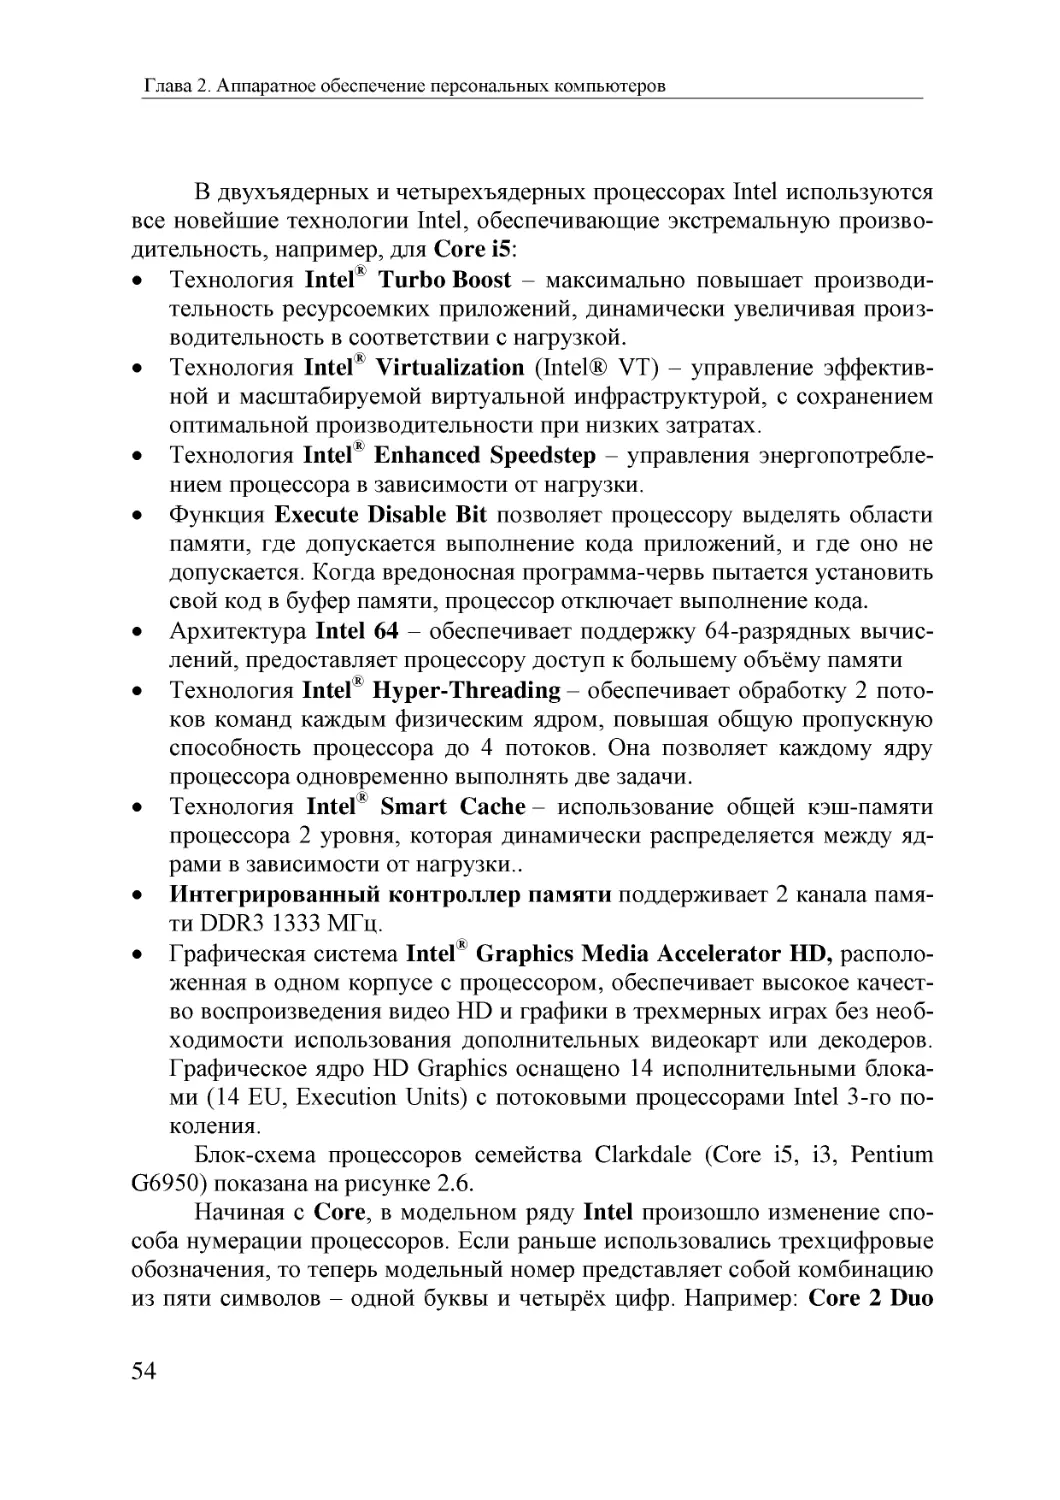 Informatika_Uchebnik_dlya_vuzov_2010 54